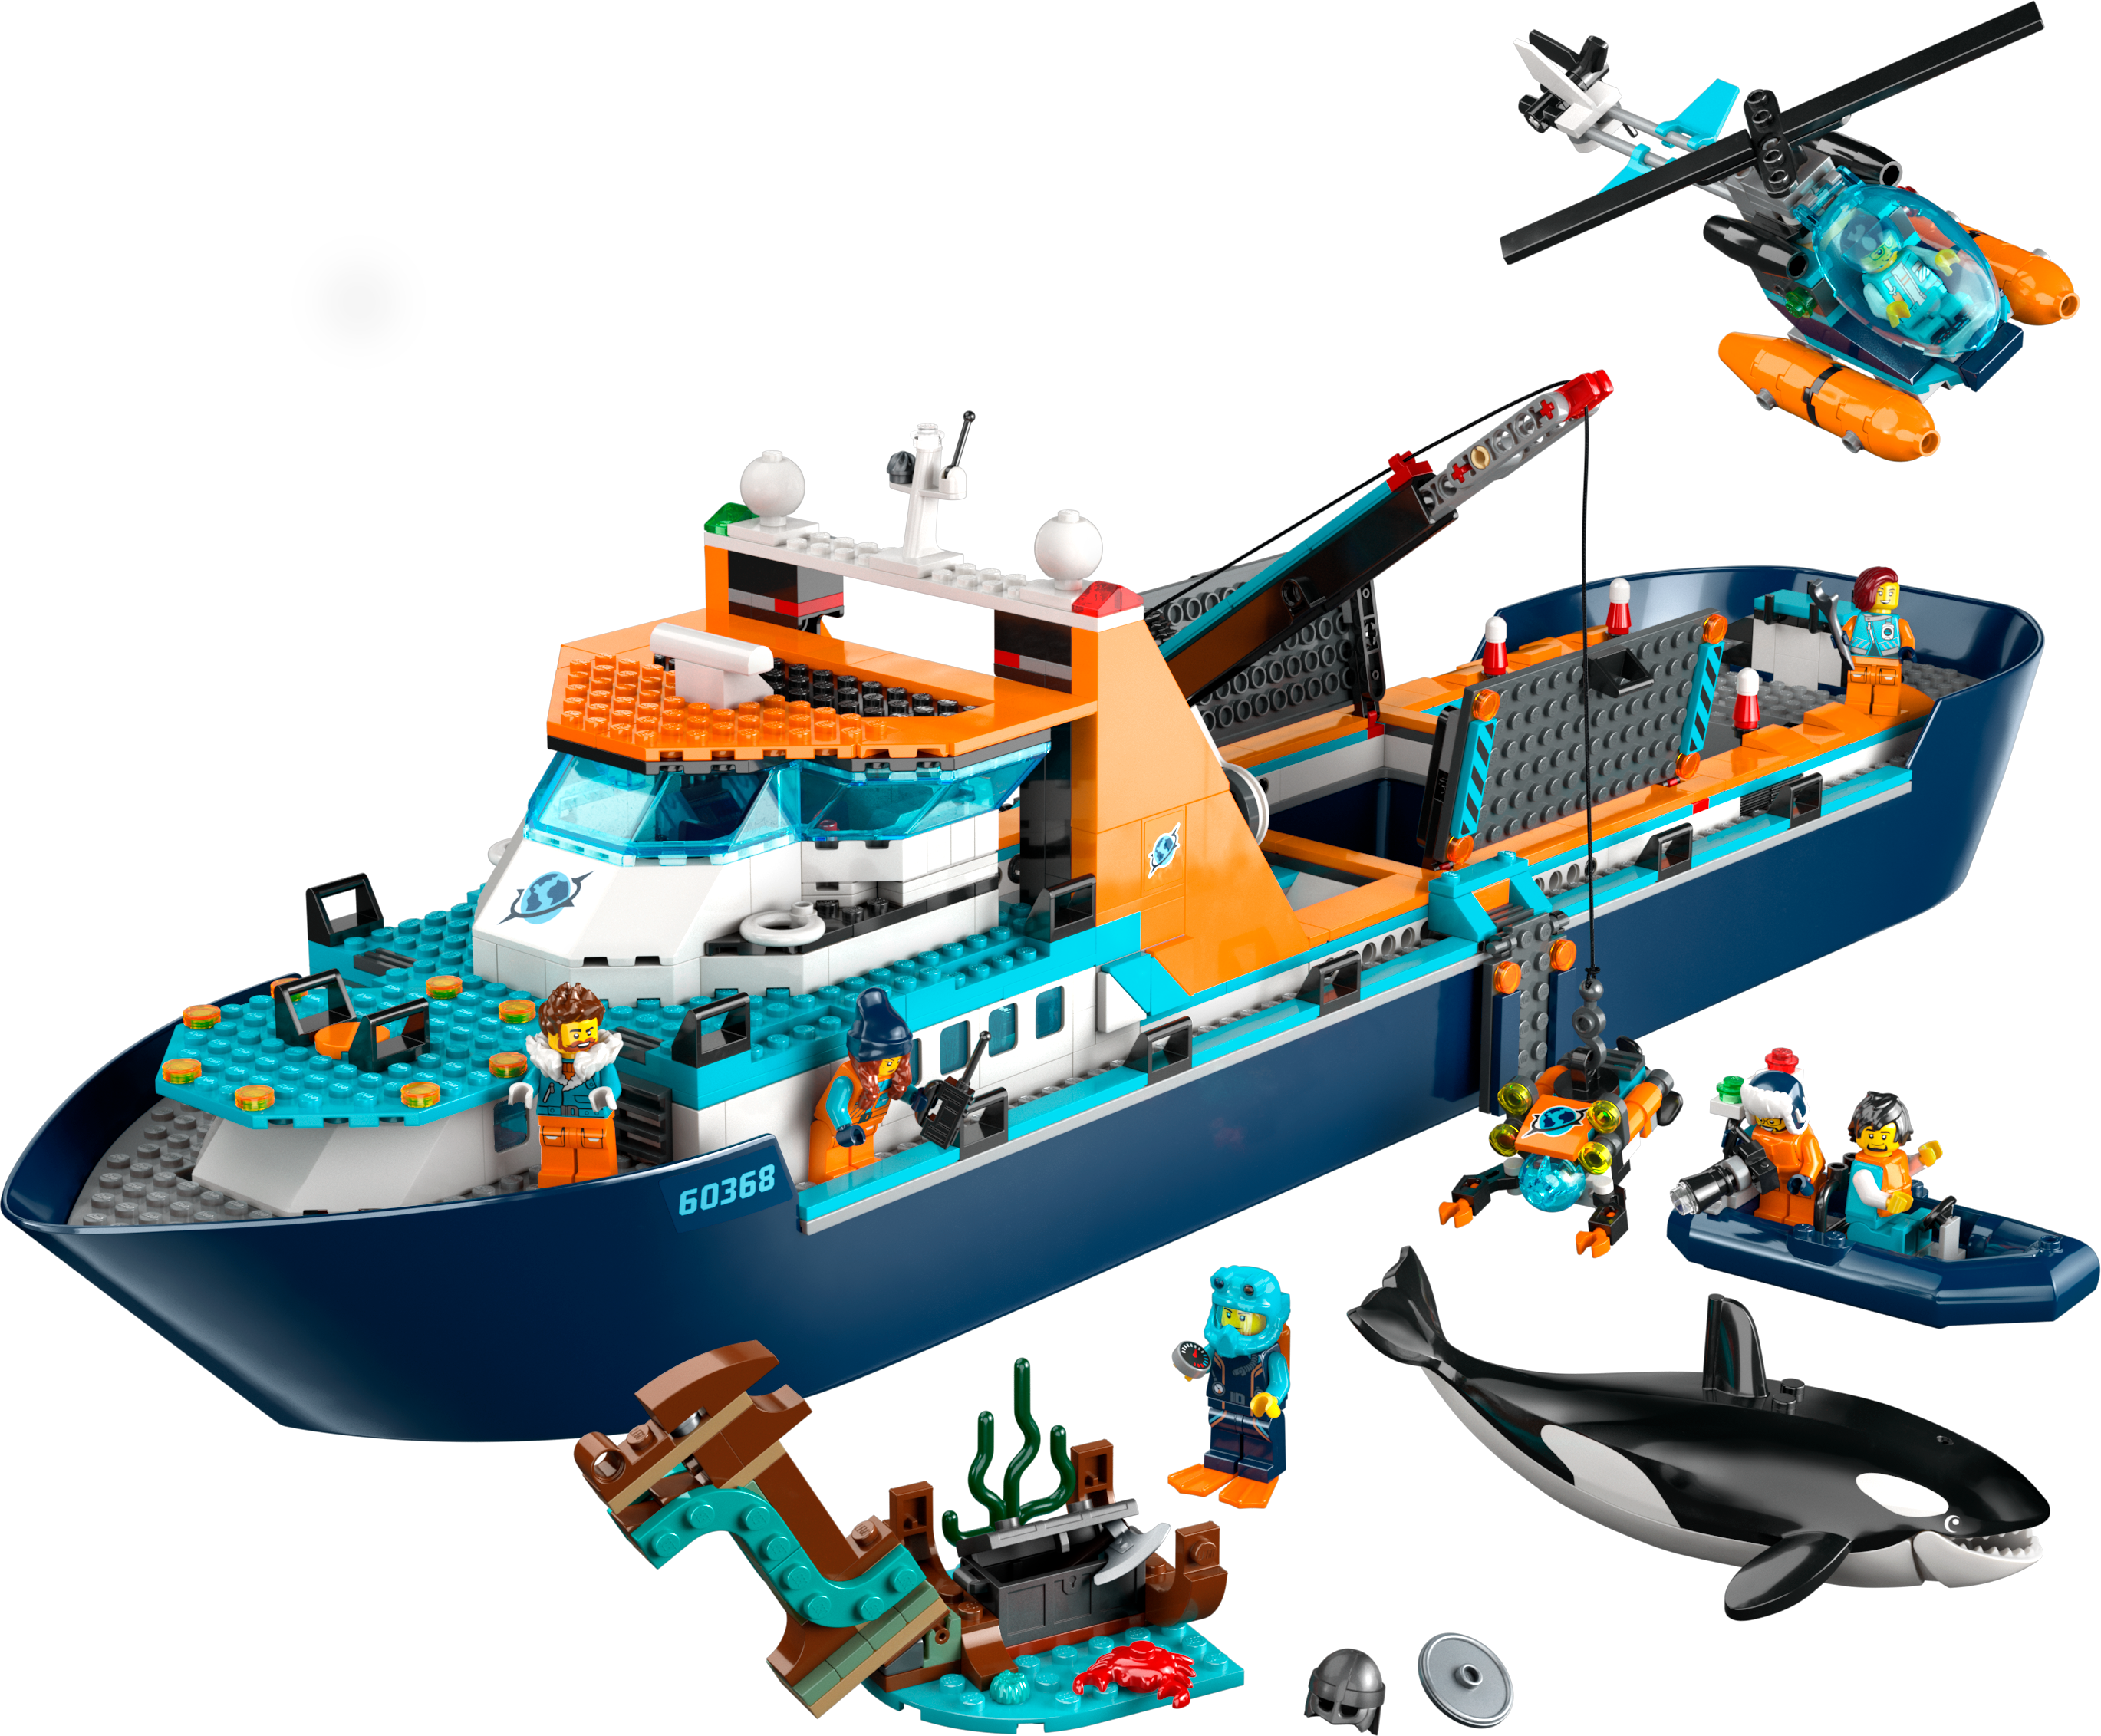 Конструктор LEGO City Арктический исследовательский корабль, 815 деталей (60368) - фото 2